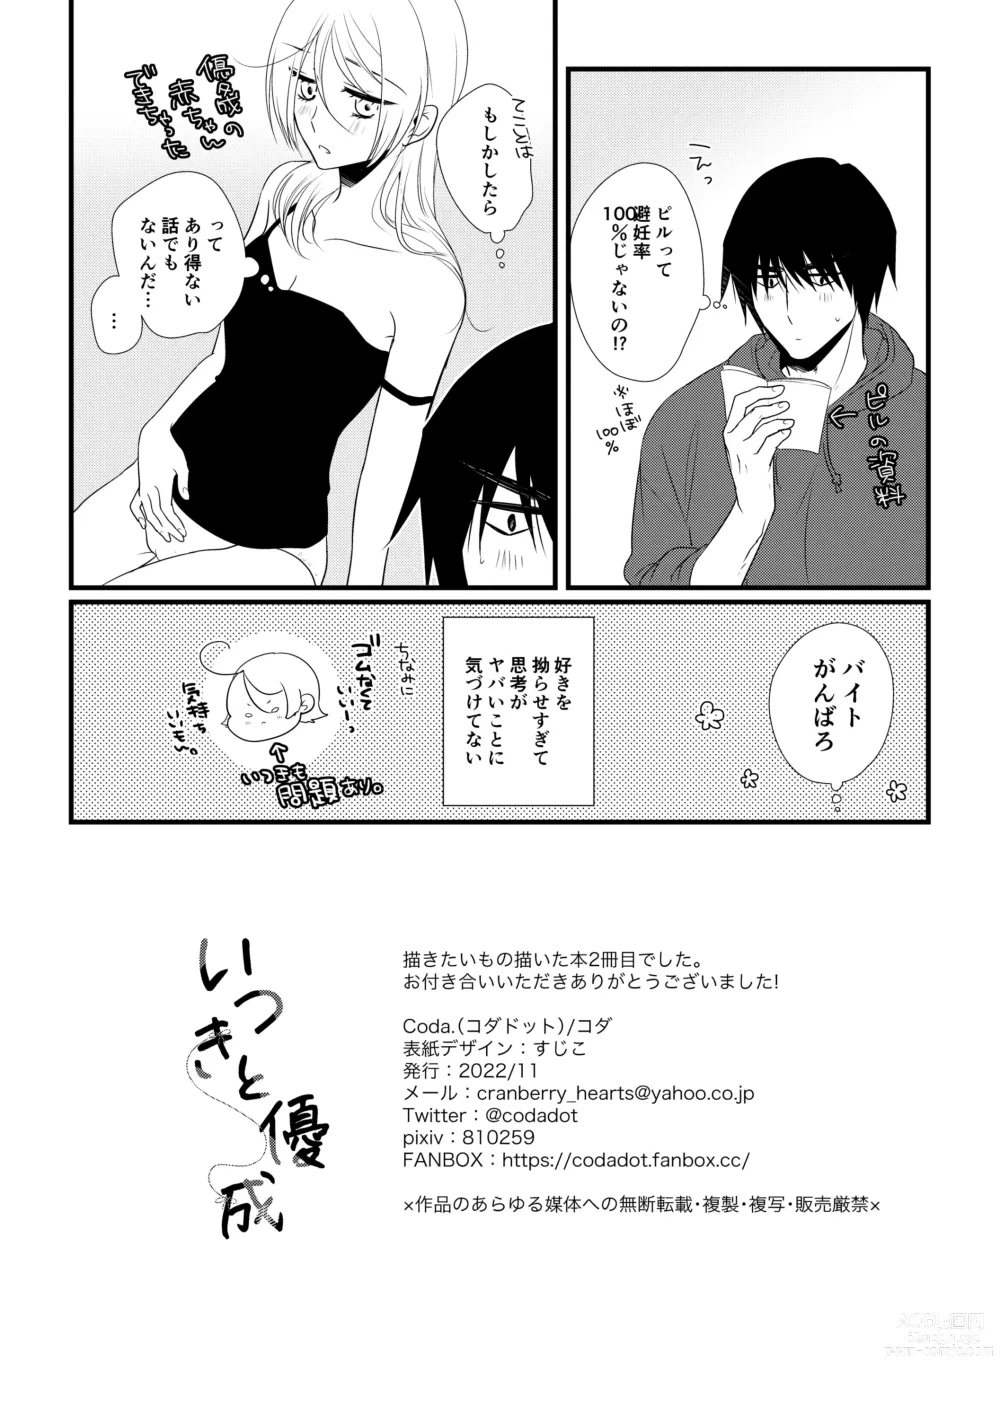 Page 111 of doujinshi Itsuki to Yuusei 2